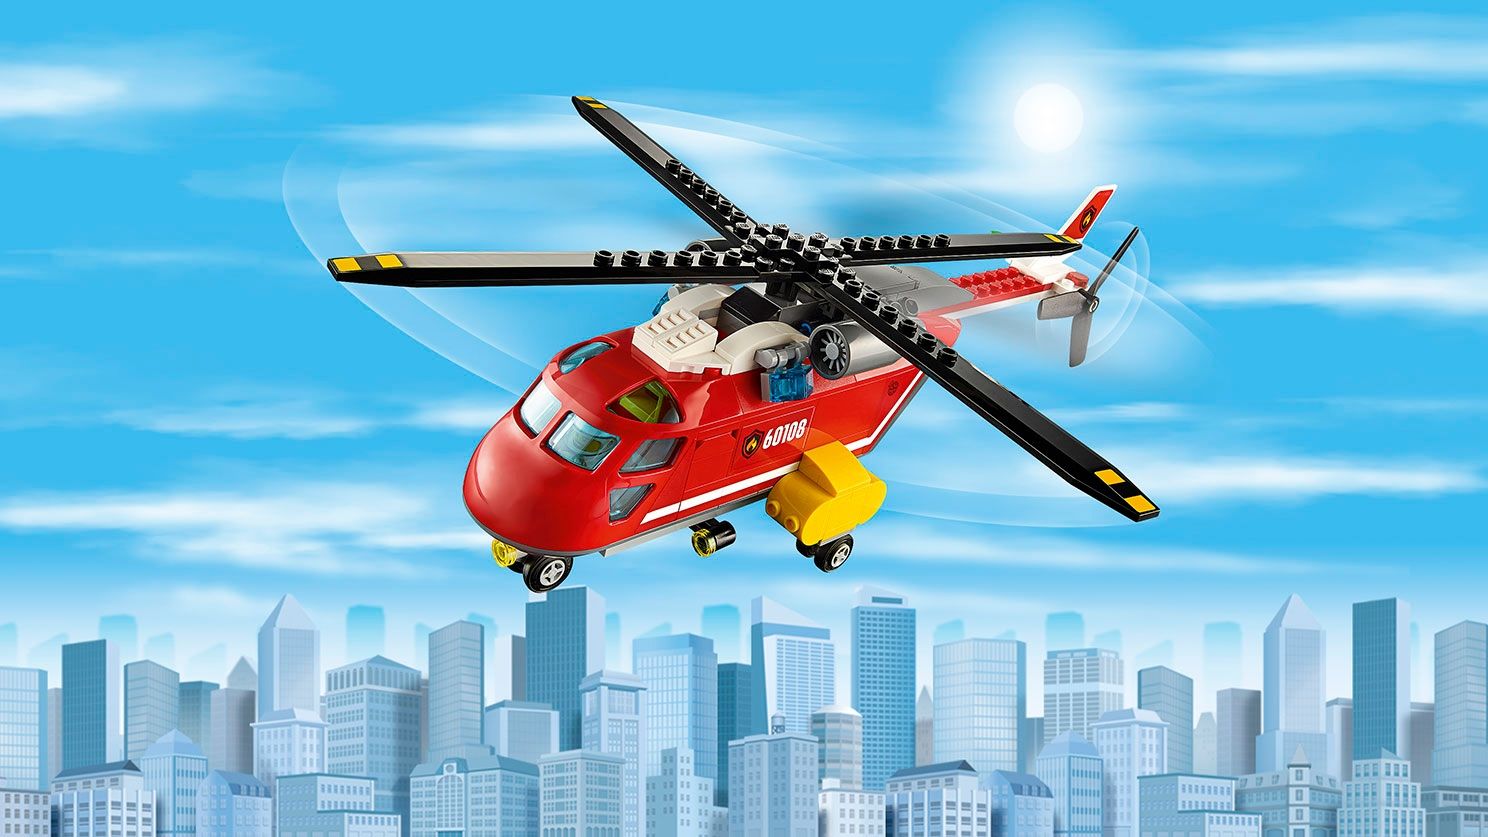 LEGO City 60108 Feuerwehr-Löscheinheit LEGO_60108_web_SEC04_1488.jpg